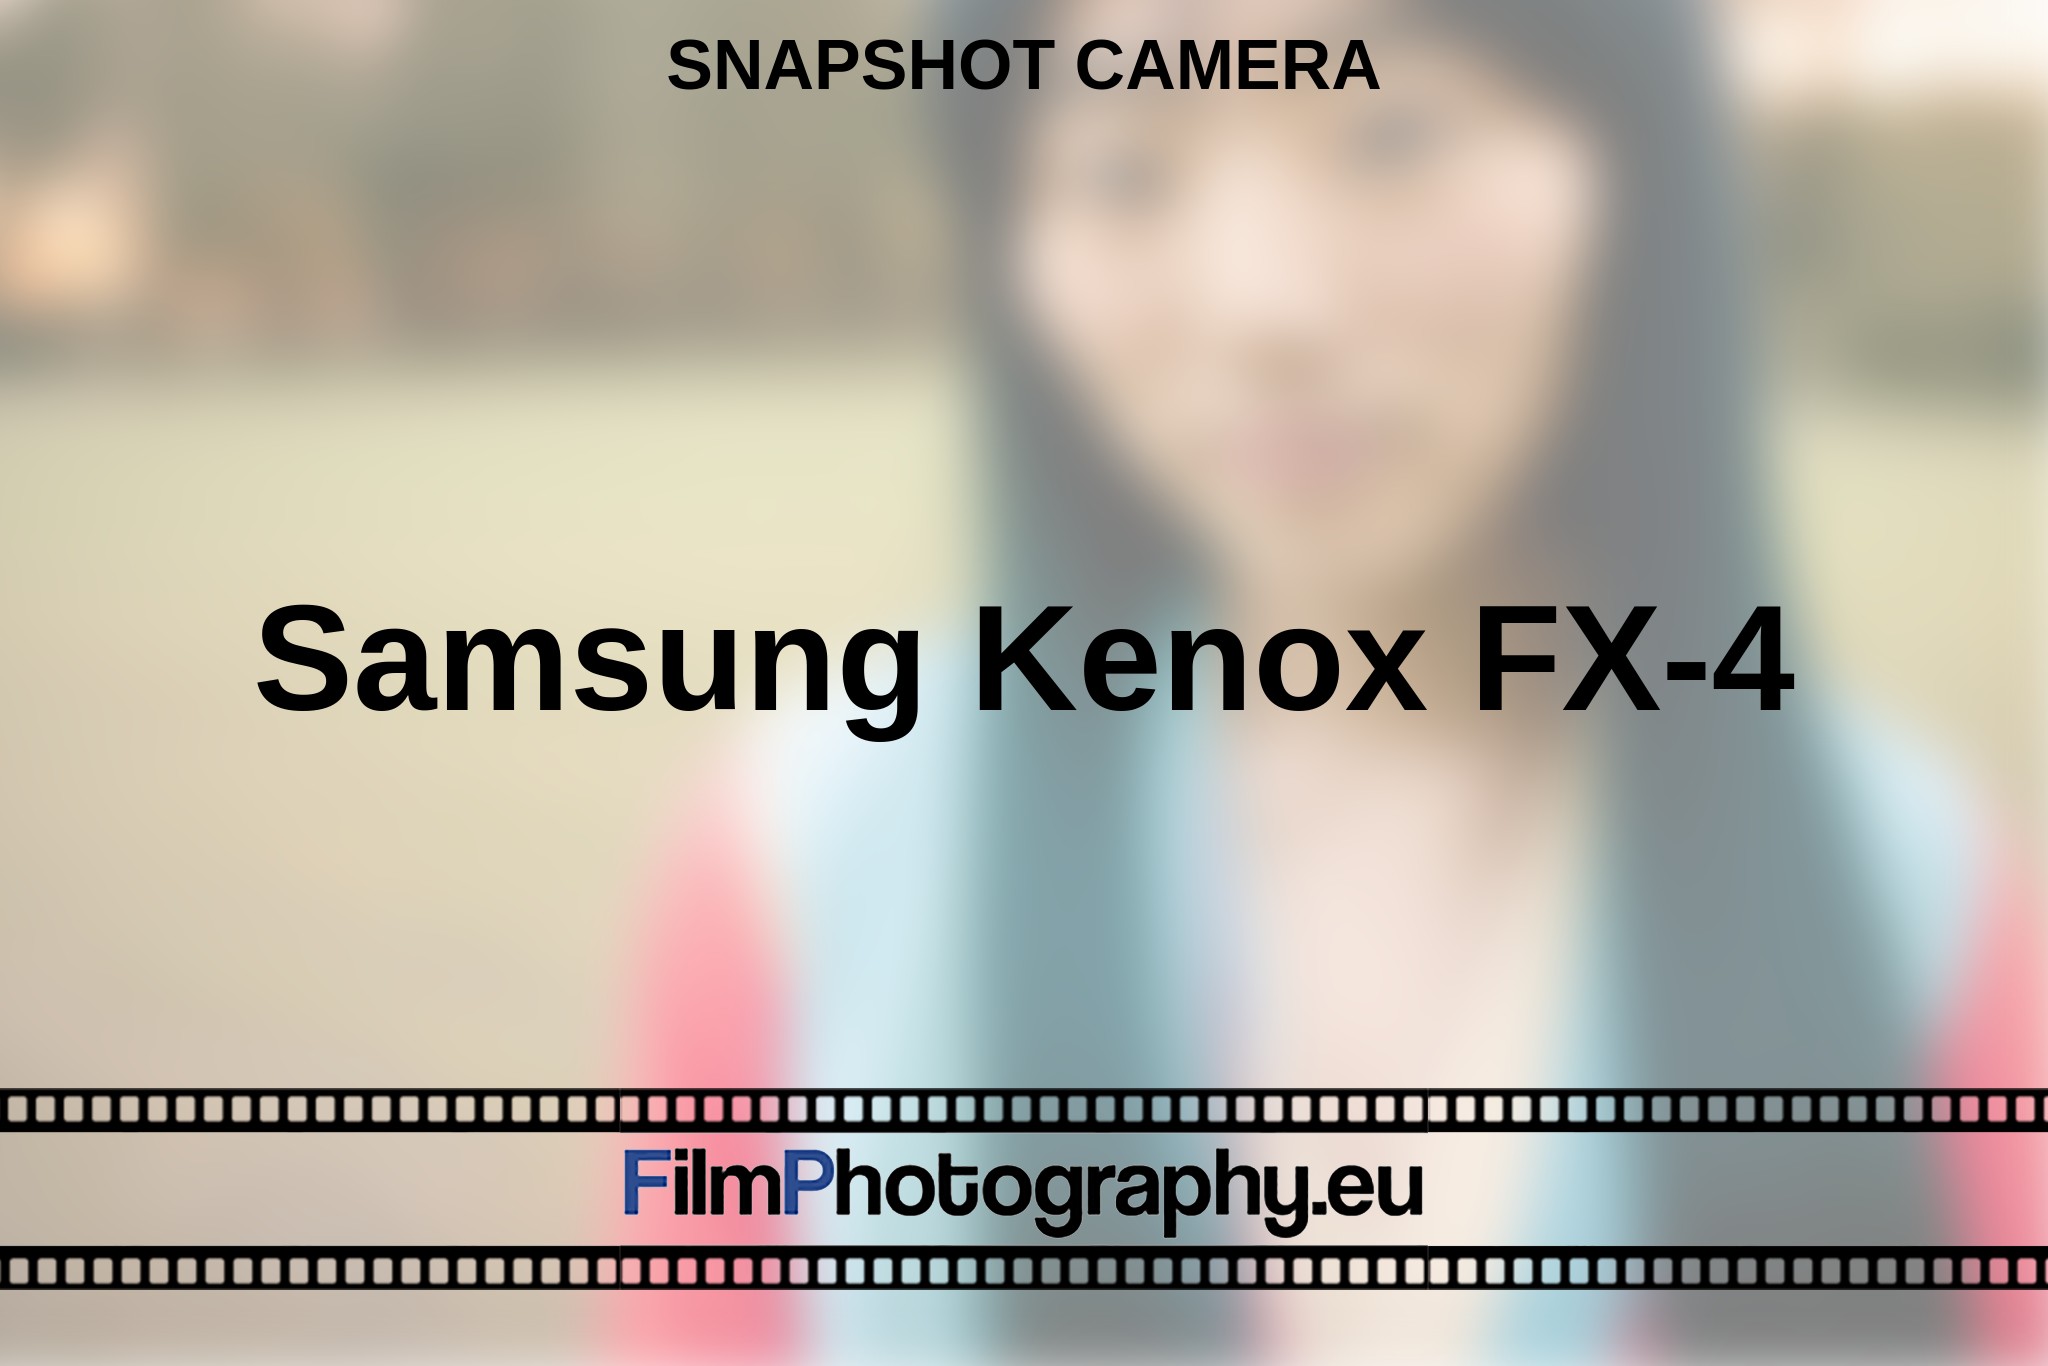 samsung-kenox-fx-4-snapshot-camera-bnv.jpg